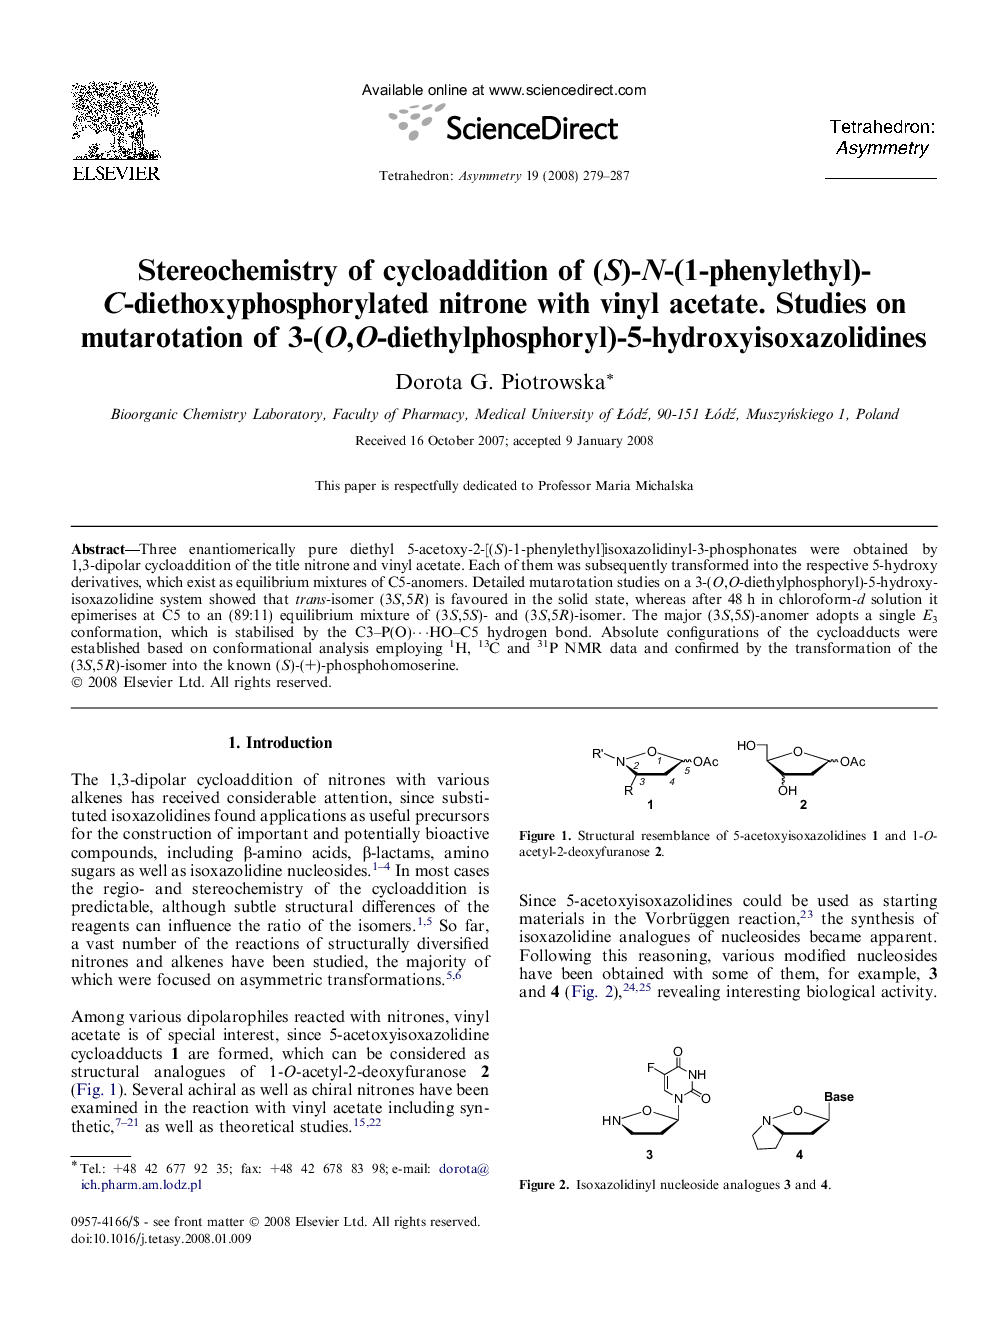 Stereochemistry of cycloaddition of (S)-N-(1-phenylethyl)-C-diethoxyphosphorylated nitrone with vinyl acetate. Studies on mutarotation of 3-(O,O-diethylphosphoryl)-5-hydroxyisoxazolidines